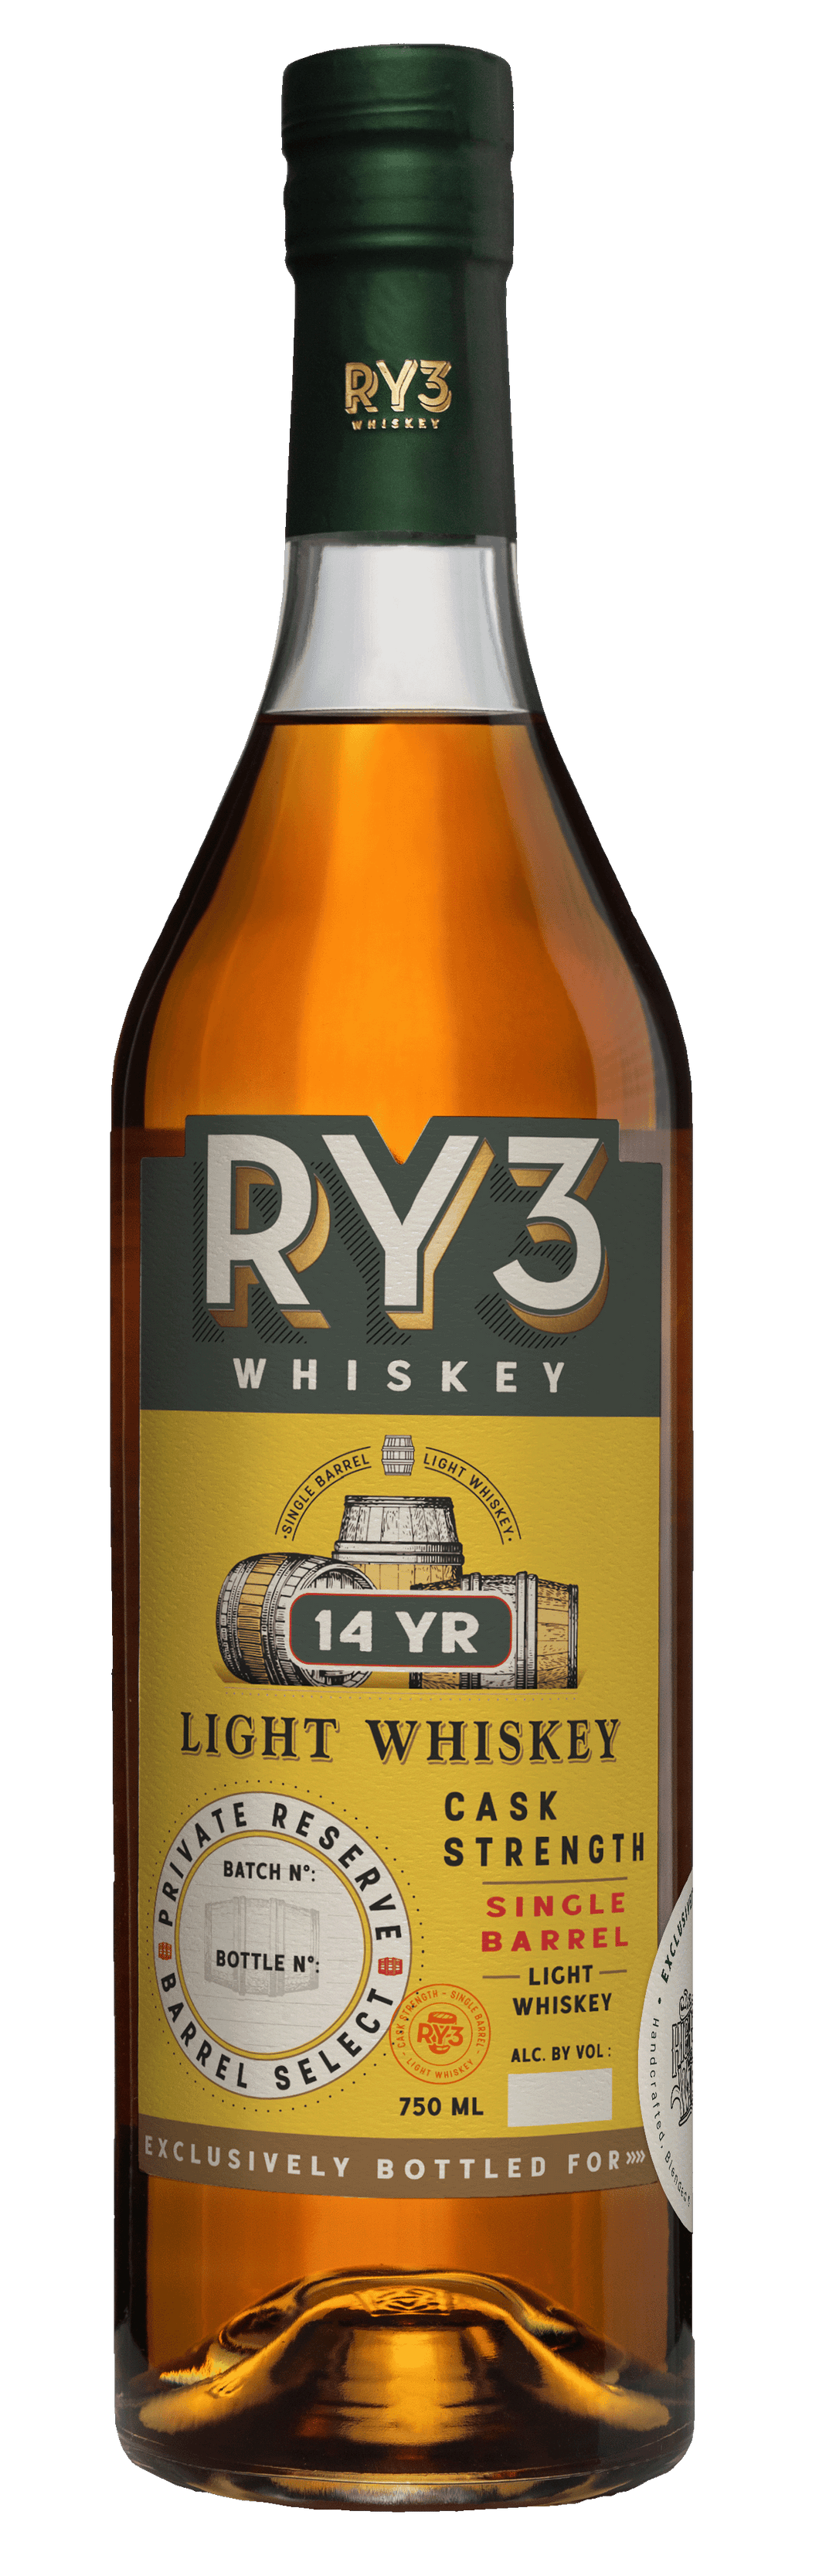 Ry3 Whiskey 14 Year Light Whiskey